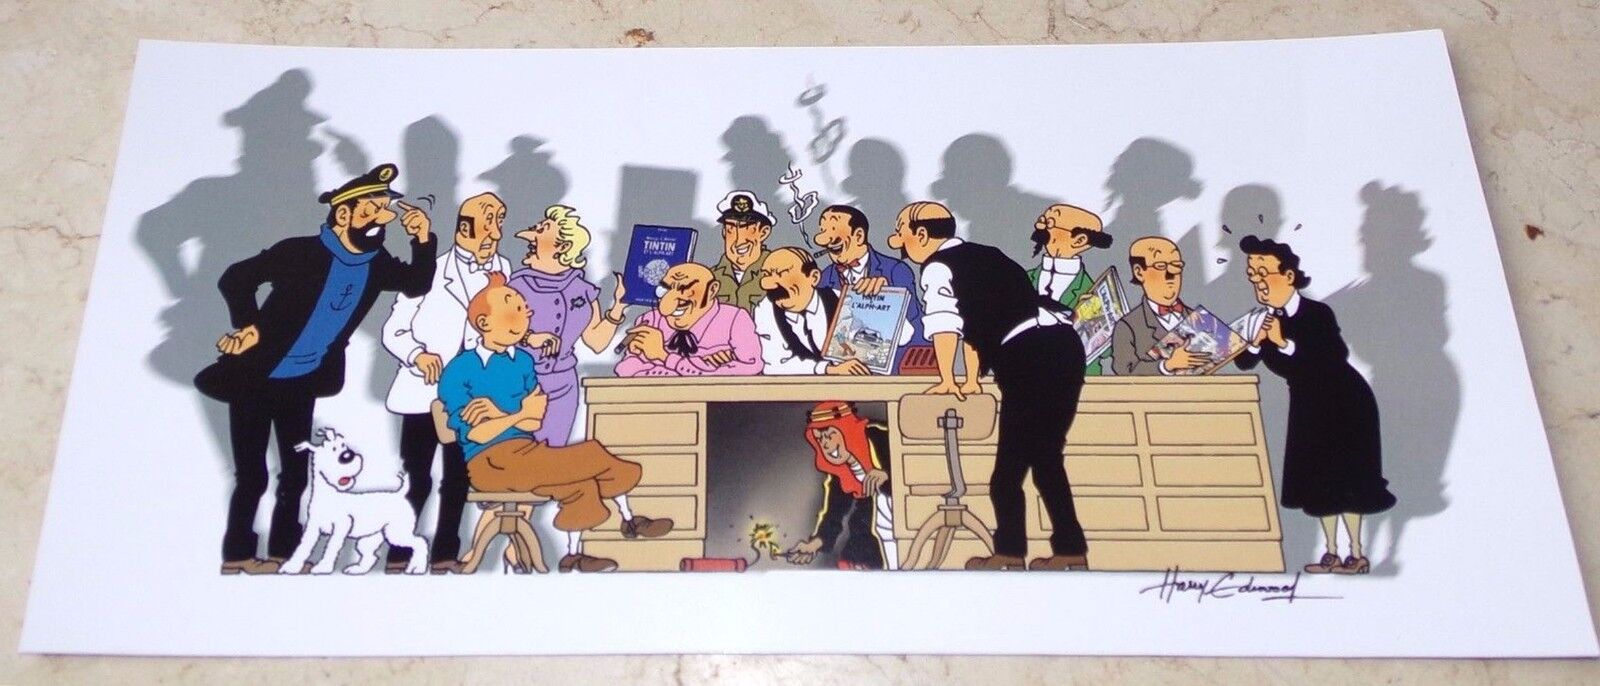 Belgium 2000 Tintin Ltd Edition color pastiche ex-libris by Harry Edwood - Mint